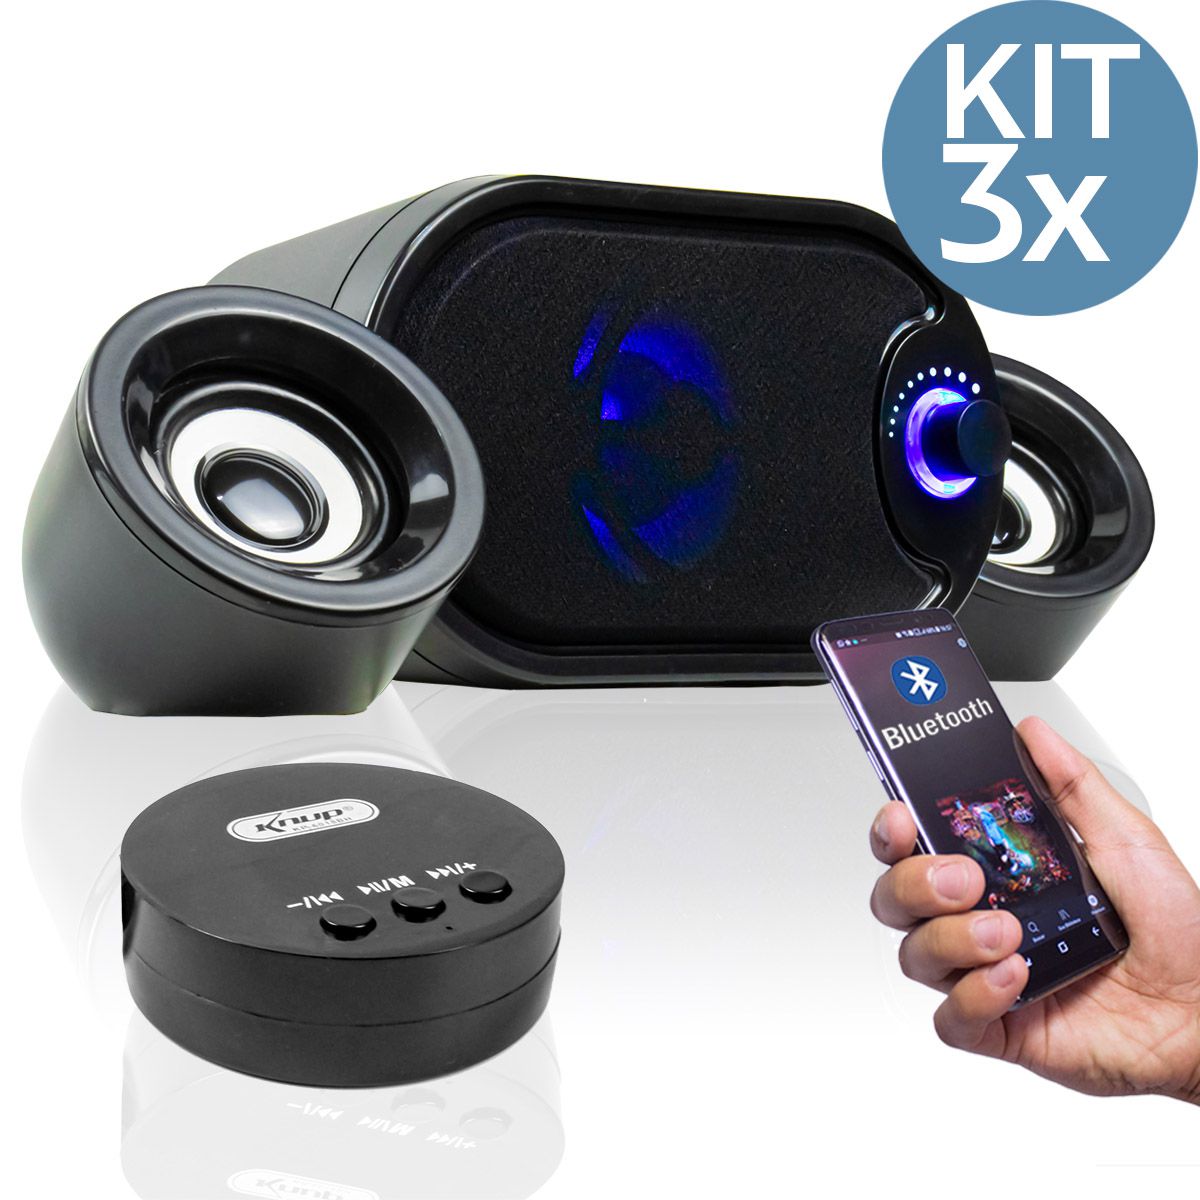 KIT 3x Caixa de Som para PC com Subwoofer e Bluetooth Knup KP-6018BH